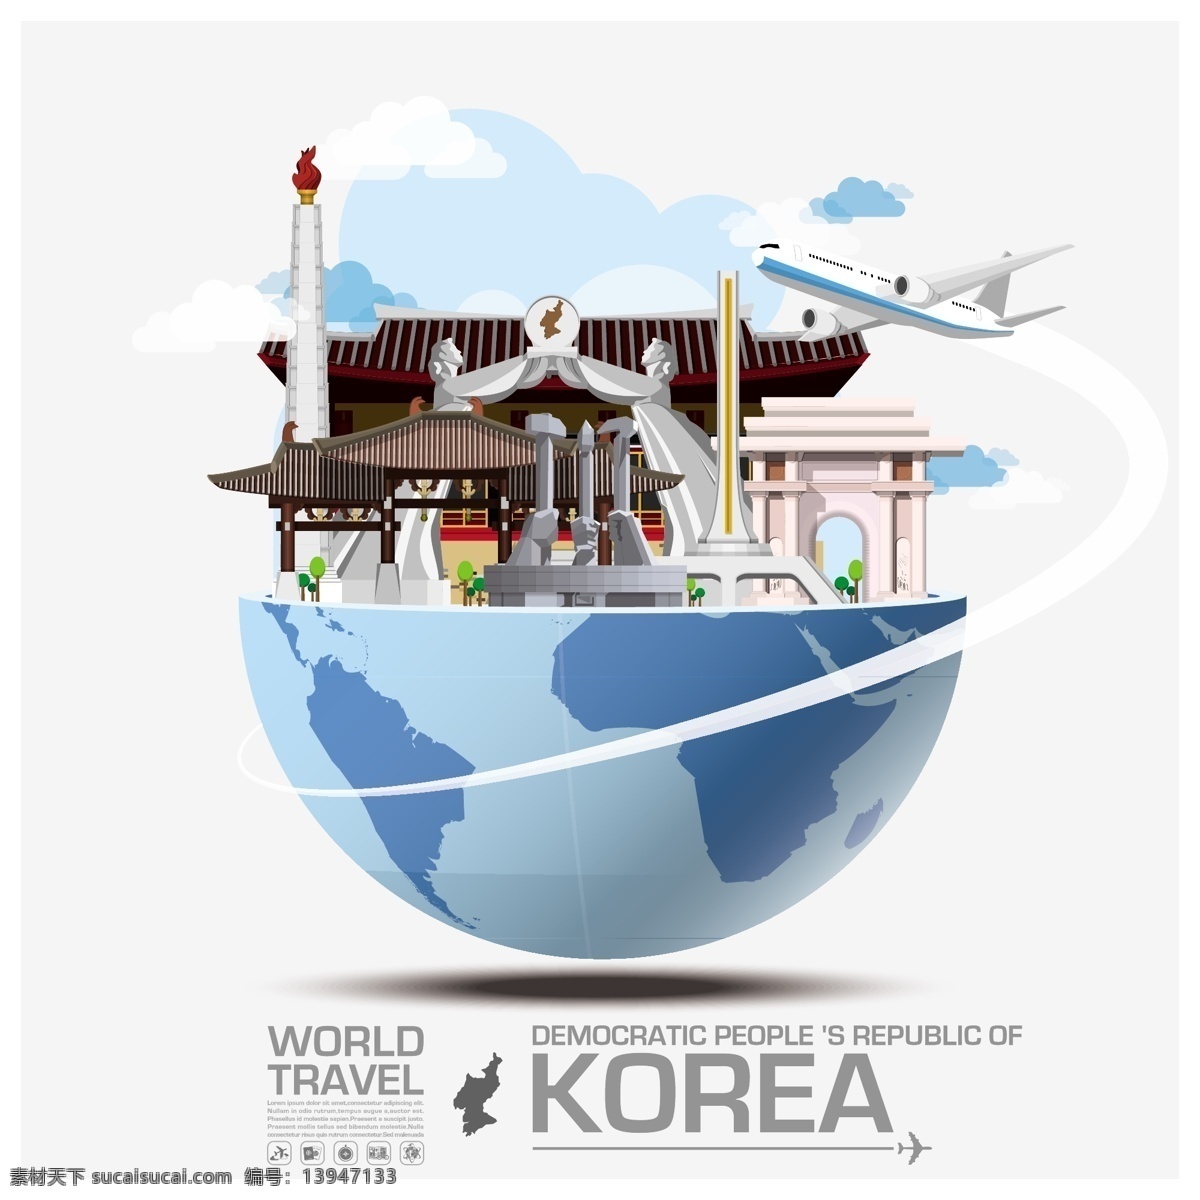 创意 韩国 旅行 建筑 飞机 特色 高楼 插画